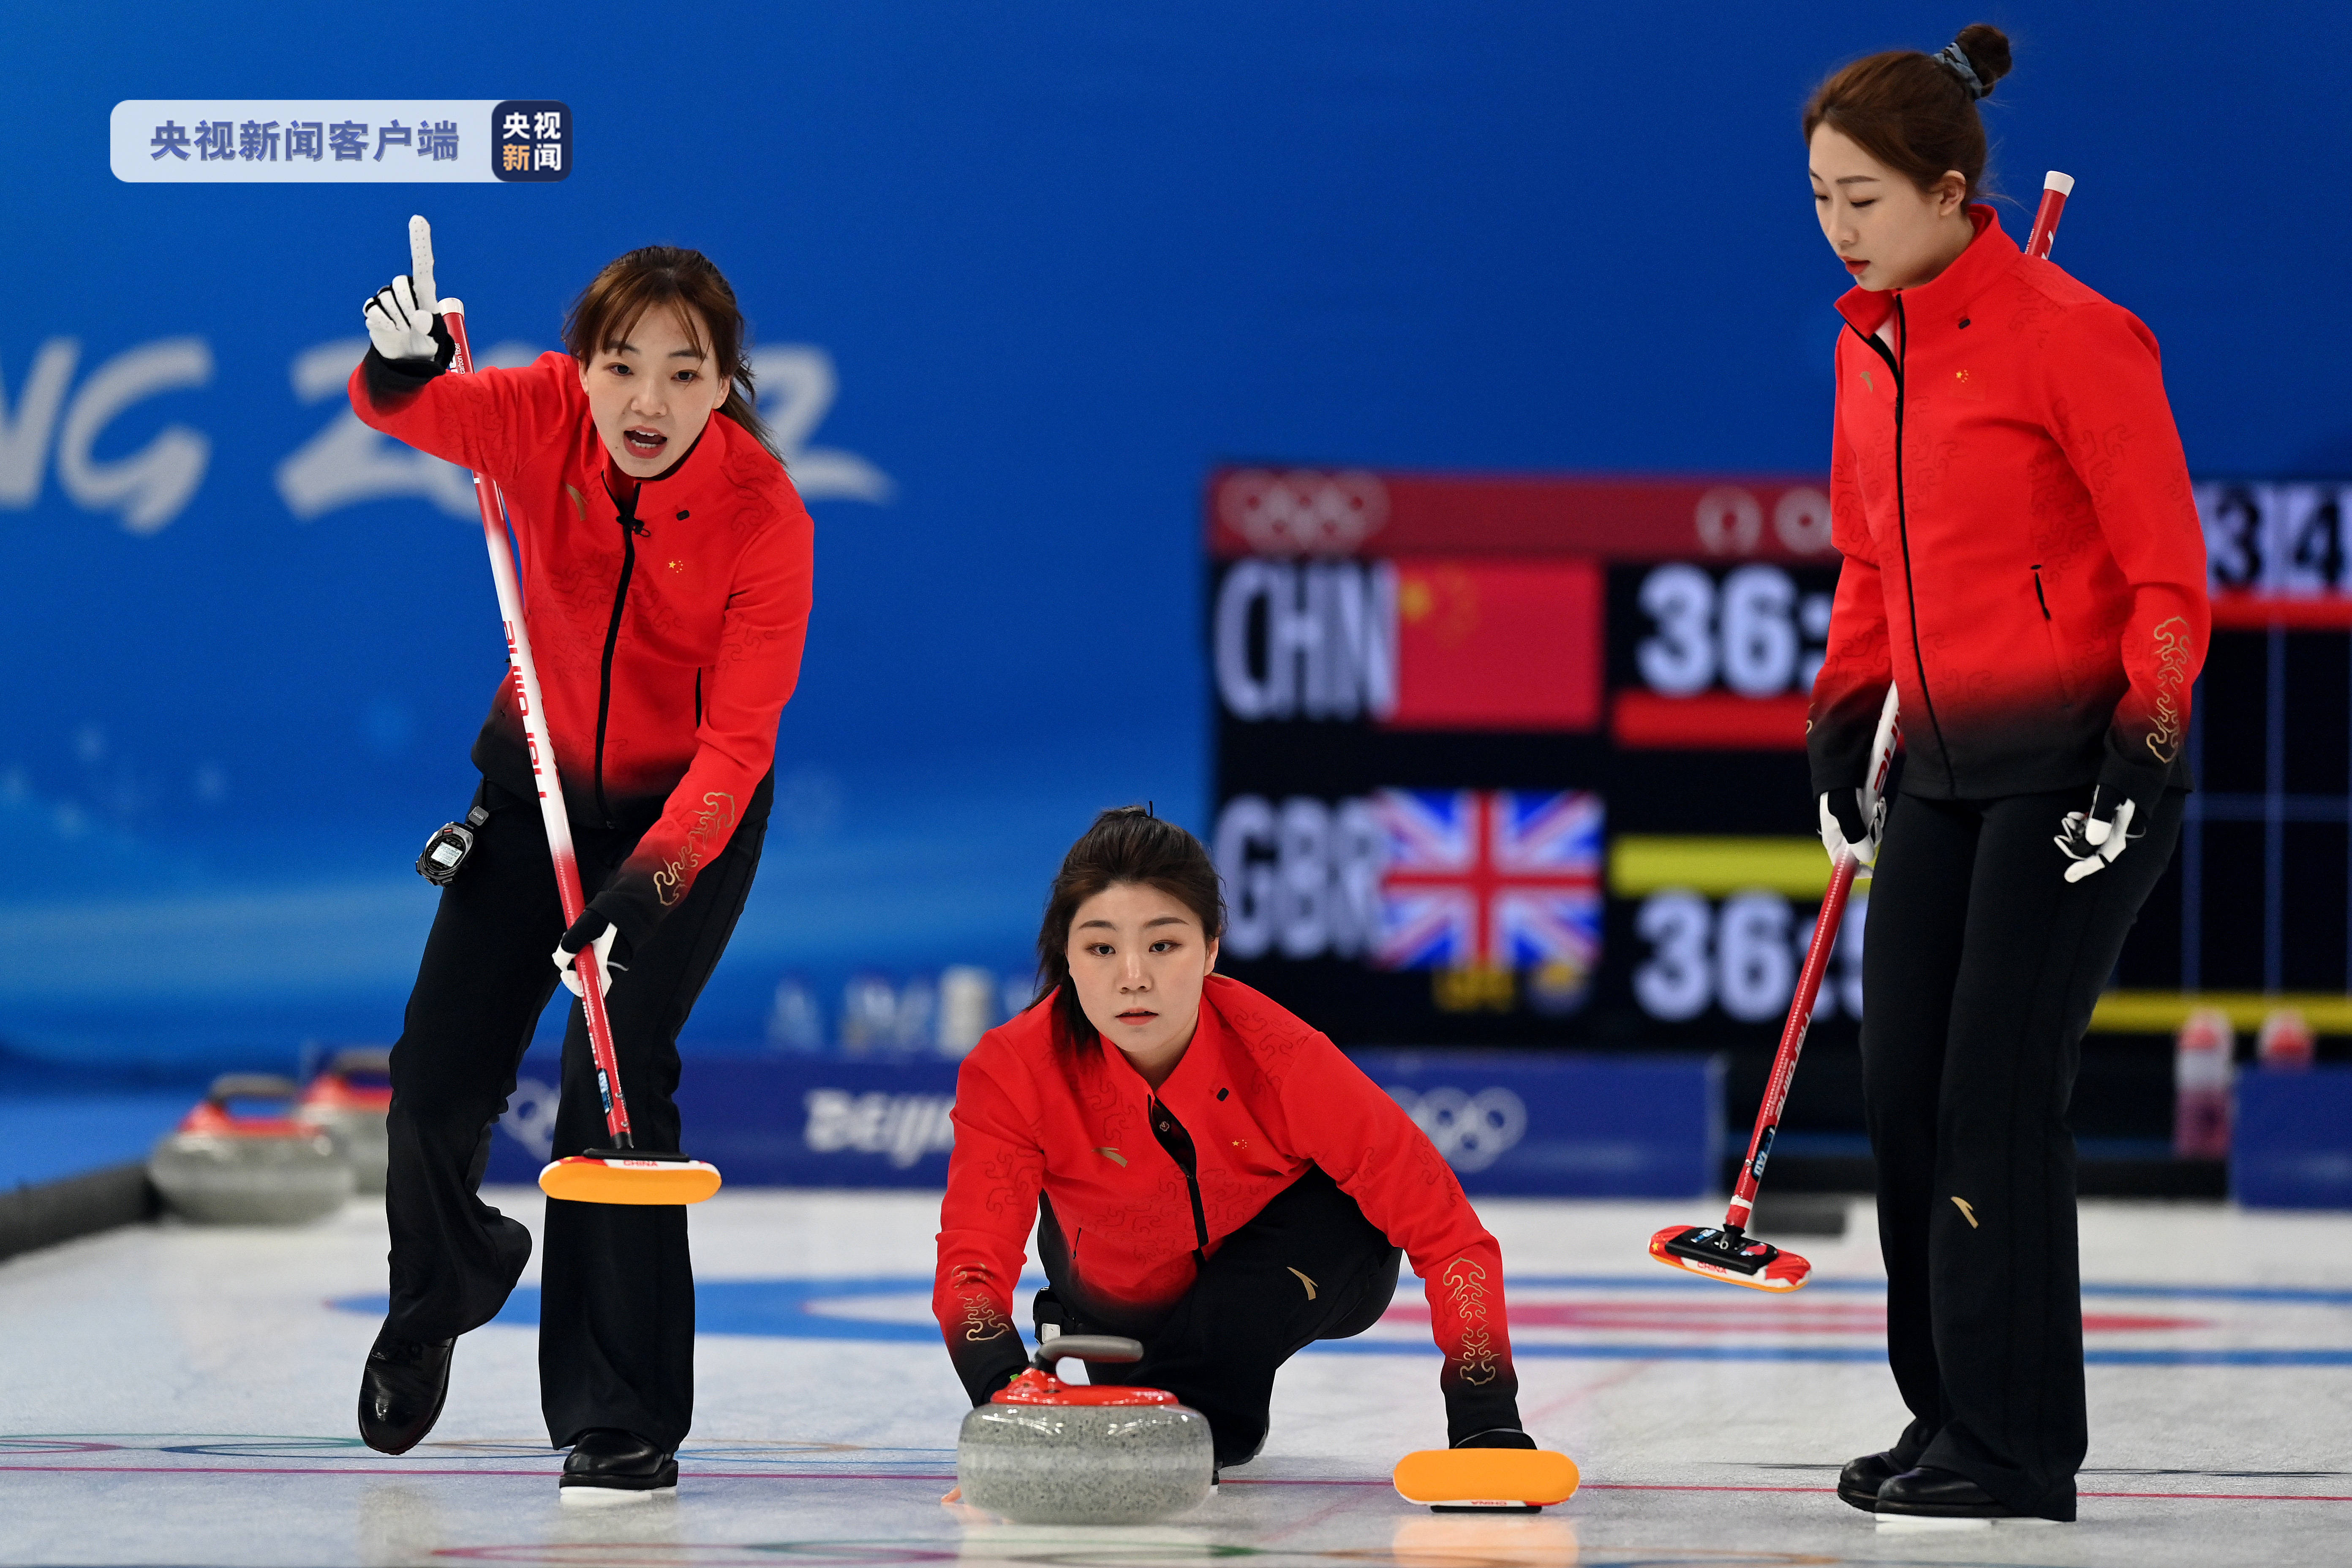 俄罗斯女子冰壶队赢得北京冬奥会首场胜利 - 2022年2月15日, 俄罗斯卫星通讯社